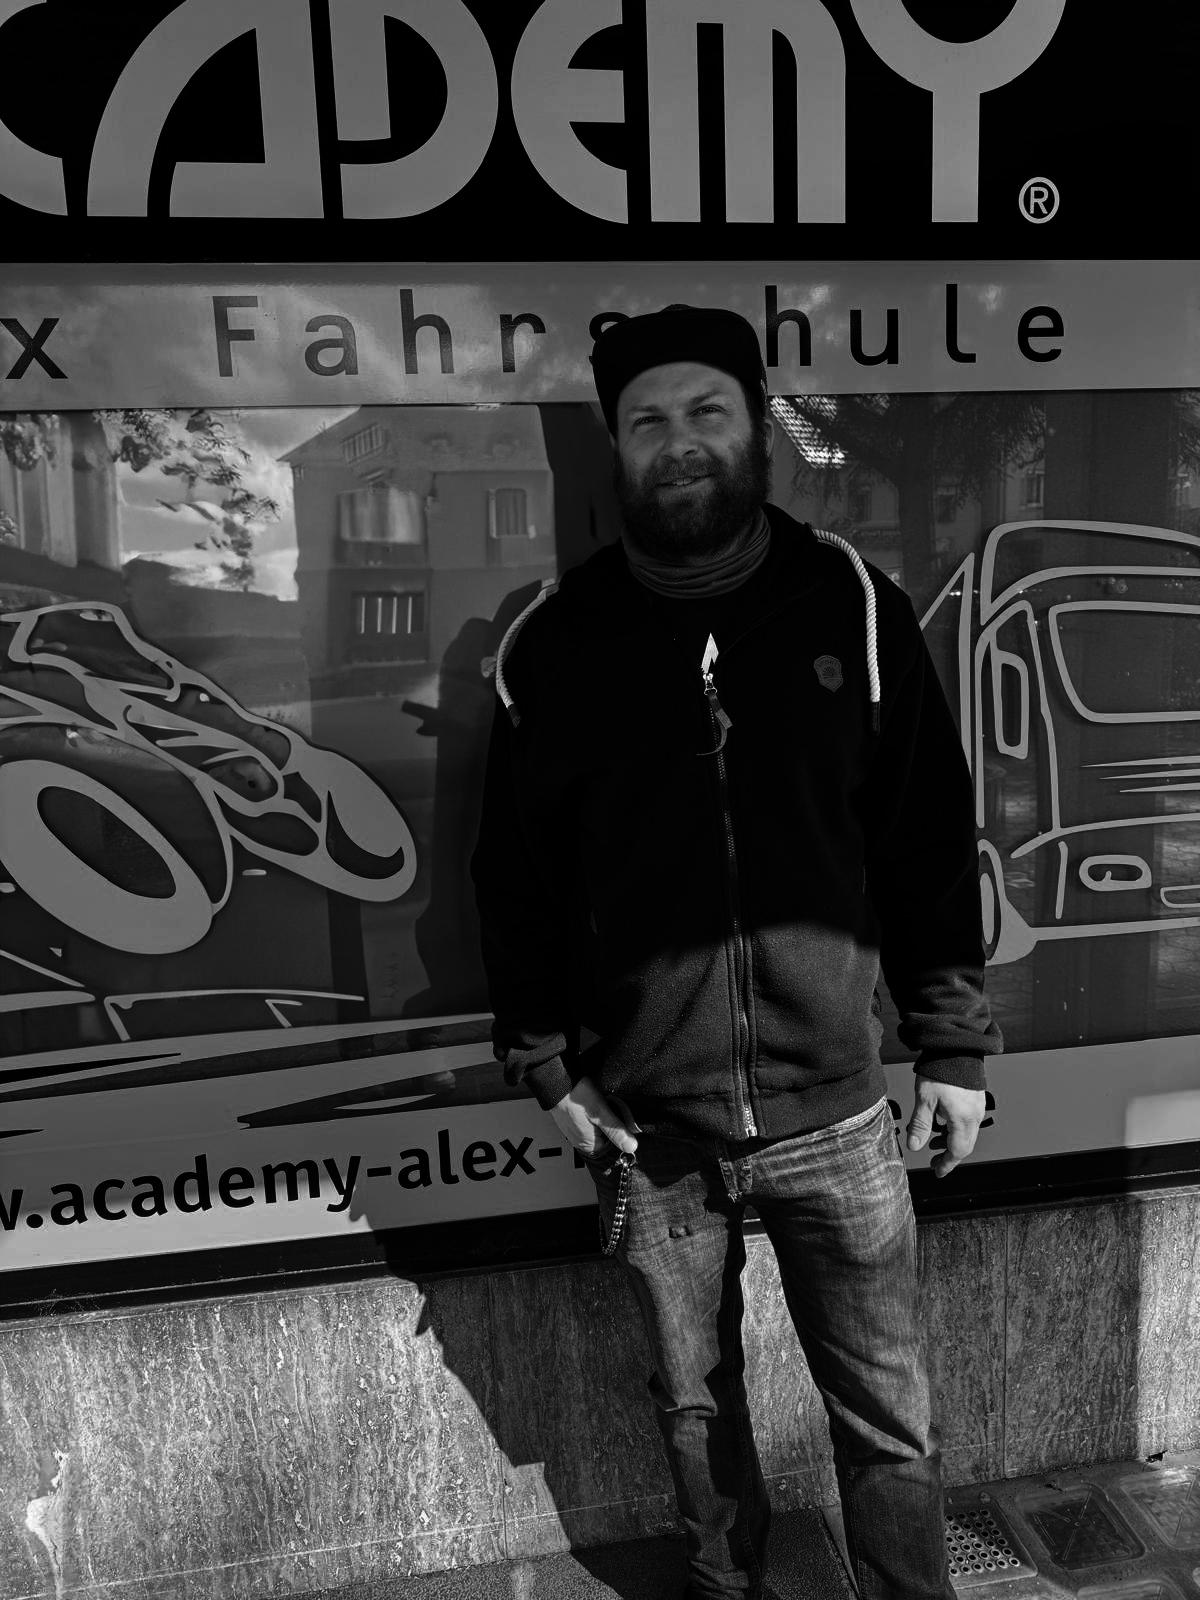 ACADEMY Fahrschule - de.academy.fahrschulen.model.instructor.Instructor@12064